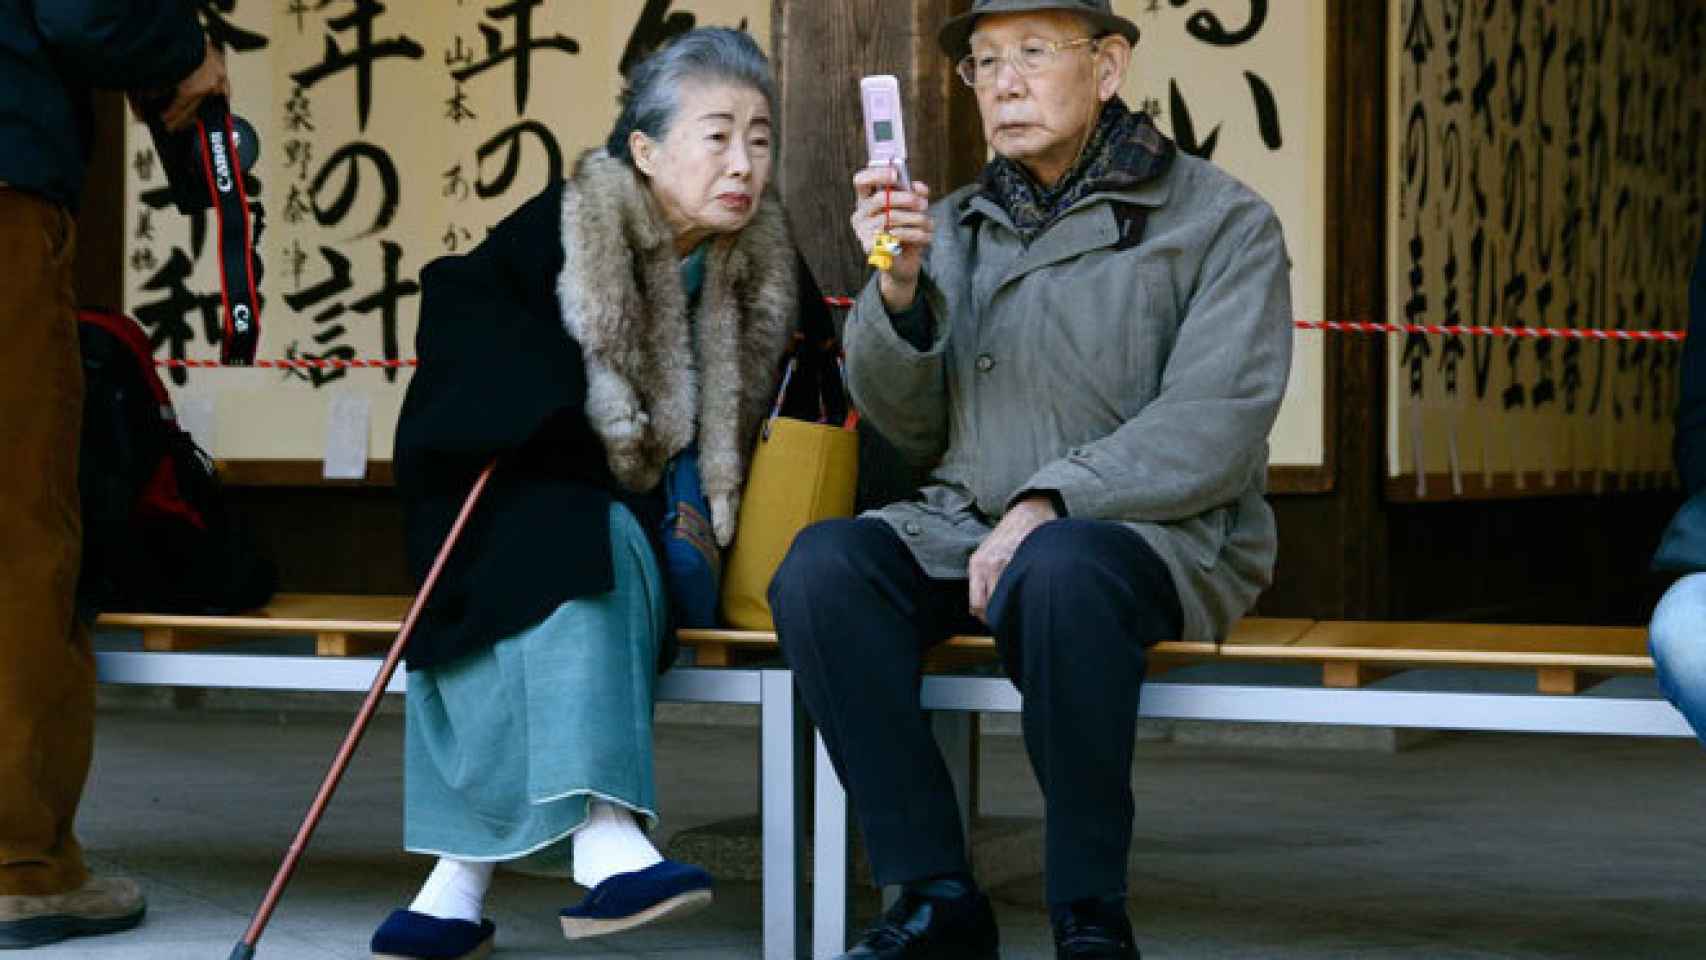 Una pareja japonesa consulta su teléfono móvil.